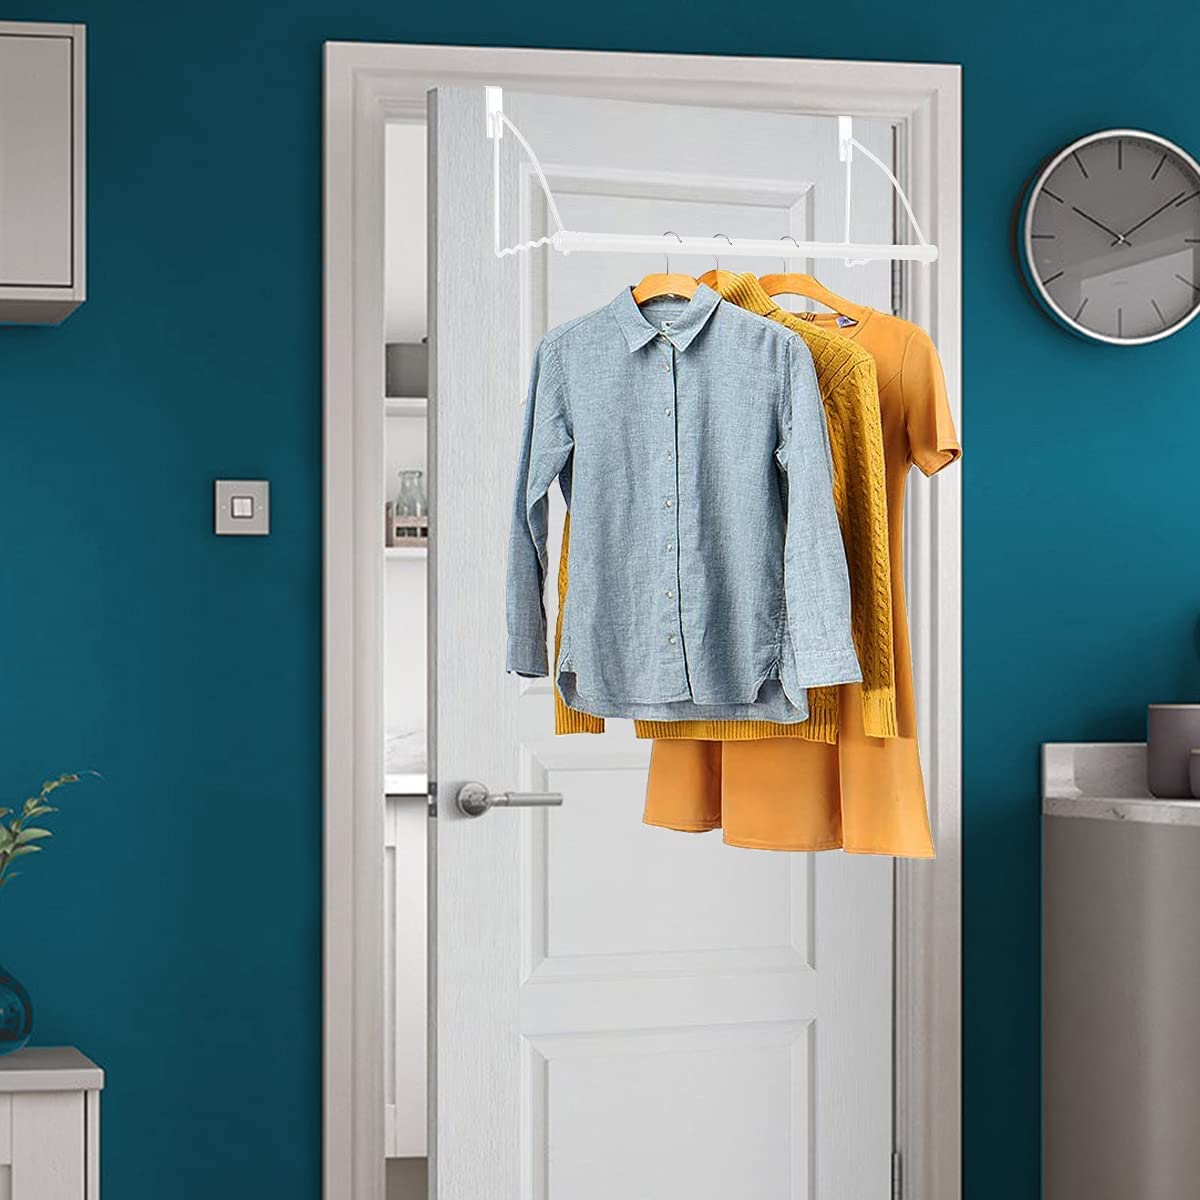 HOLDN’ STORAGE Over the Door Hooks - Door Rack Hangers for Clothes - Bathroom Over Door Hooks for Hanging clothes- Over the Door Clothes Drying Rack.